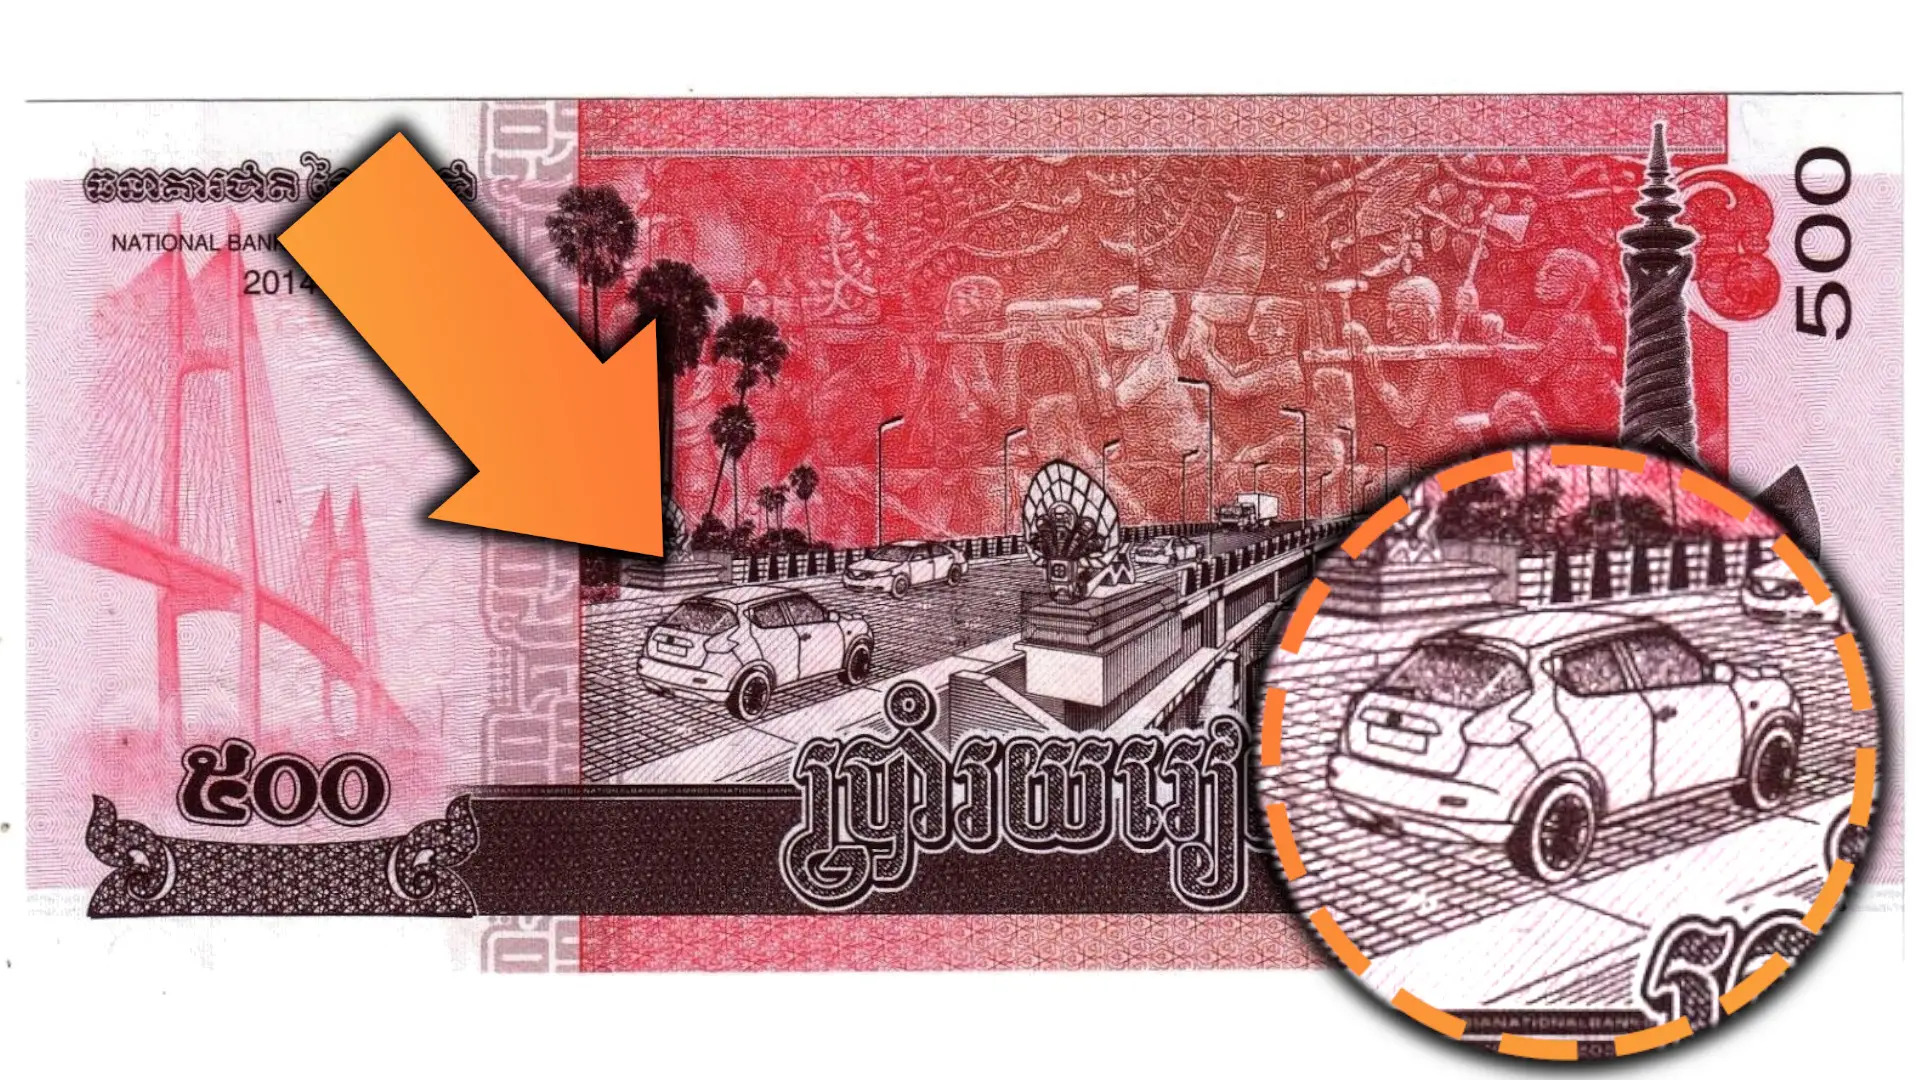 Tiền Campuchia mang trong mình nét đẹp cổ kính của đất nước hình chữ S. Từ kiến trúc, quan niệm tôn giáo cho đến nghệ thuật kiến tạo, tất cả đều được thể hiện tinh tế trên các tờ tiền Campuchia. Xem hình ảnh để khám phá thêm những bí mật đằng sau tiền Campuchia.